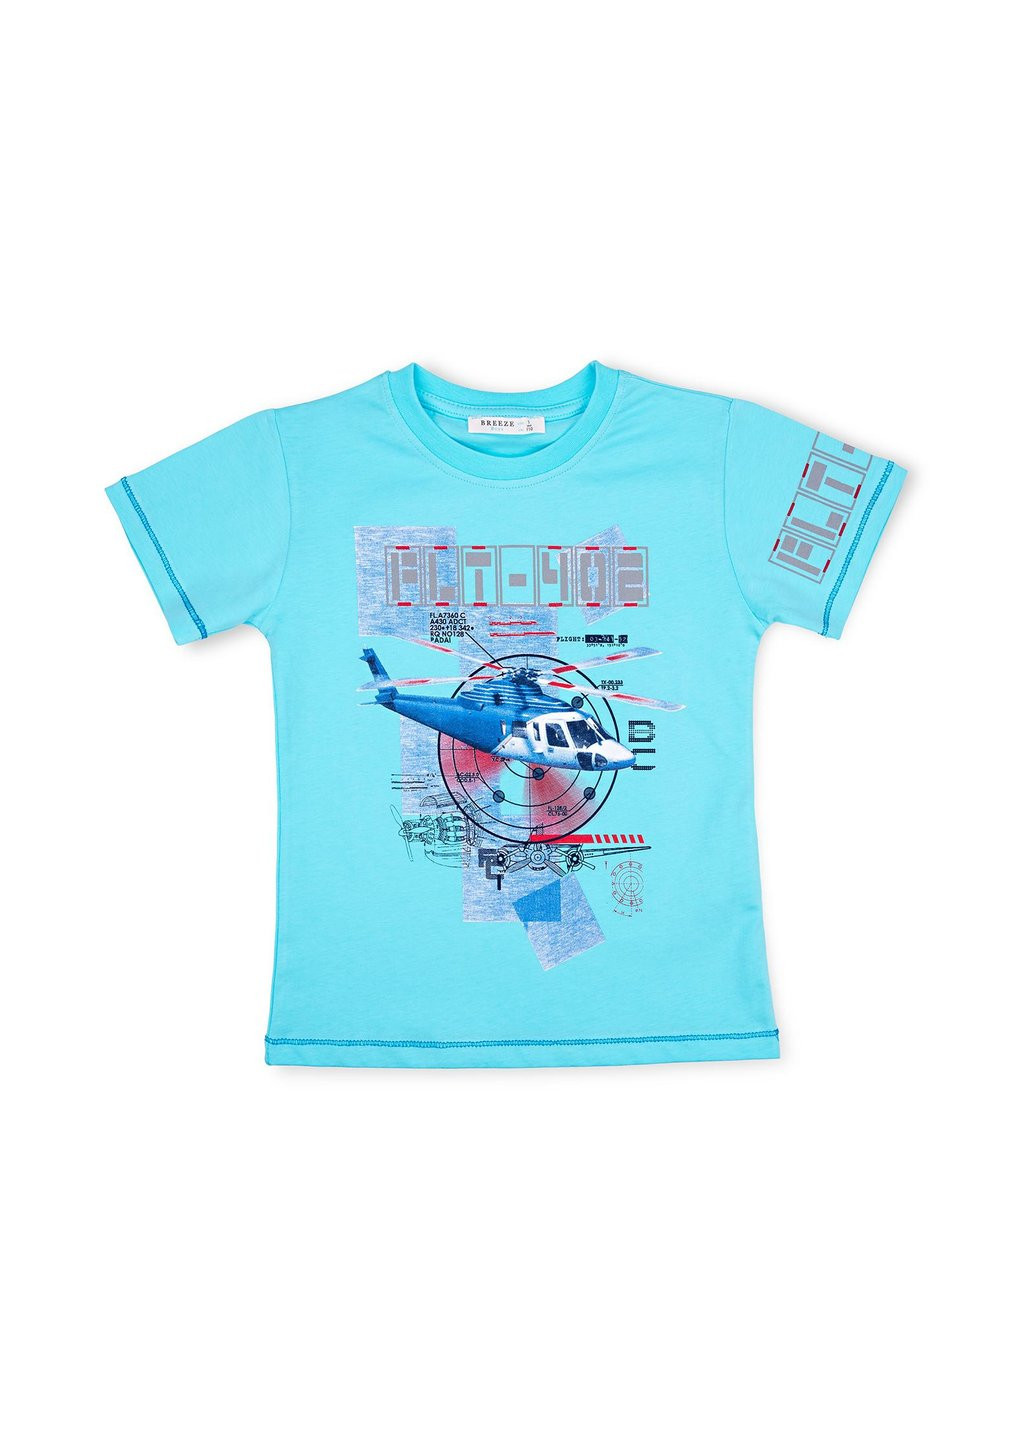 Голубой летний набор детской одежды с вертолетом (10970-134b-blue) Breeze